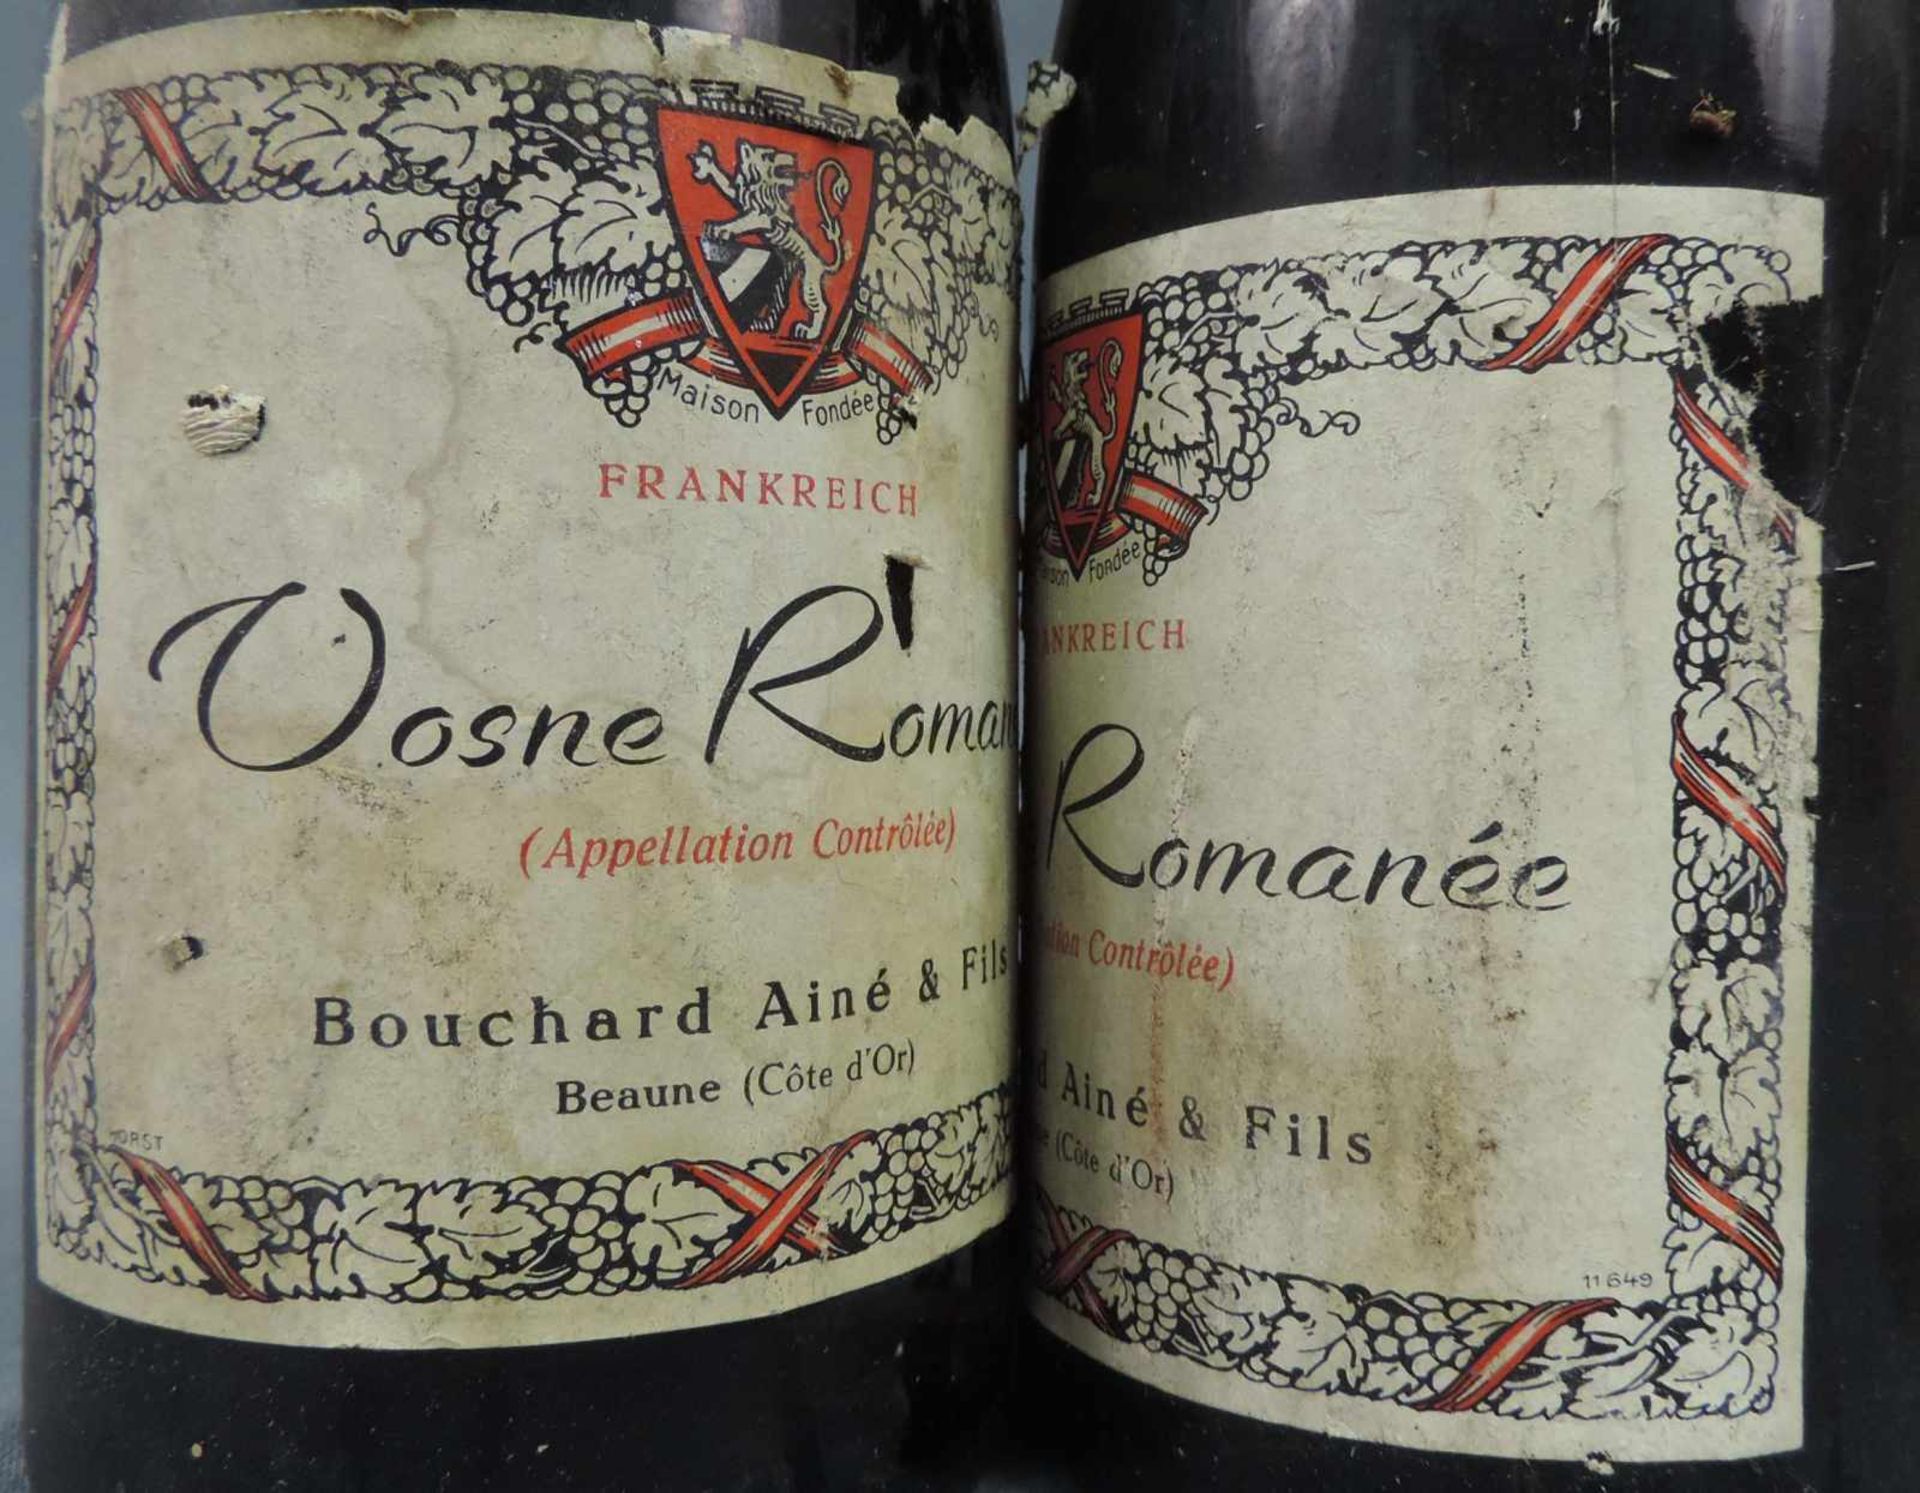 1937 Vosne Romanée AC Bouchard Ainé Fils. Beaune (Cote d'Or). 3 ganze Flaschen. Rotwein. Frankreich. - Image 2 of 6